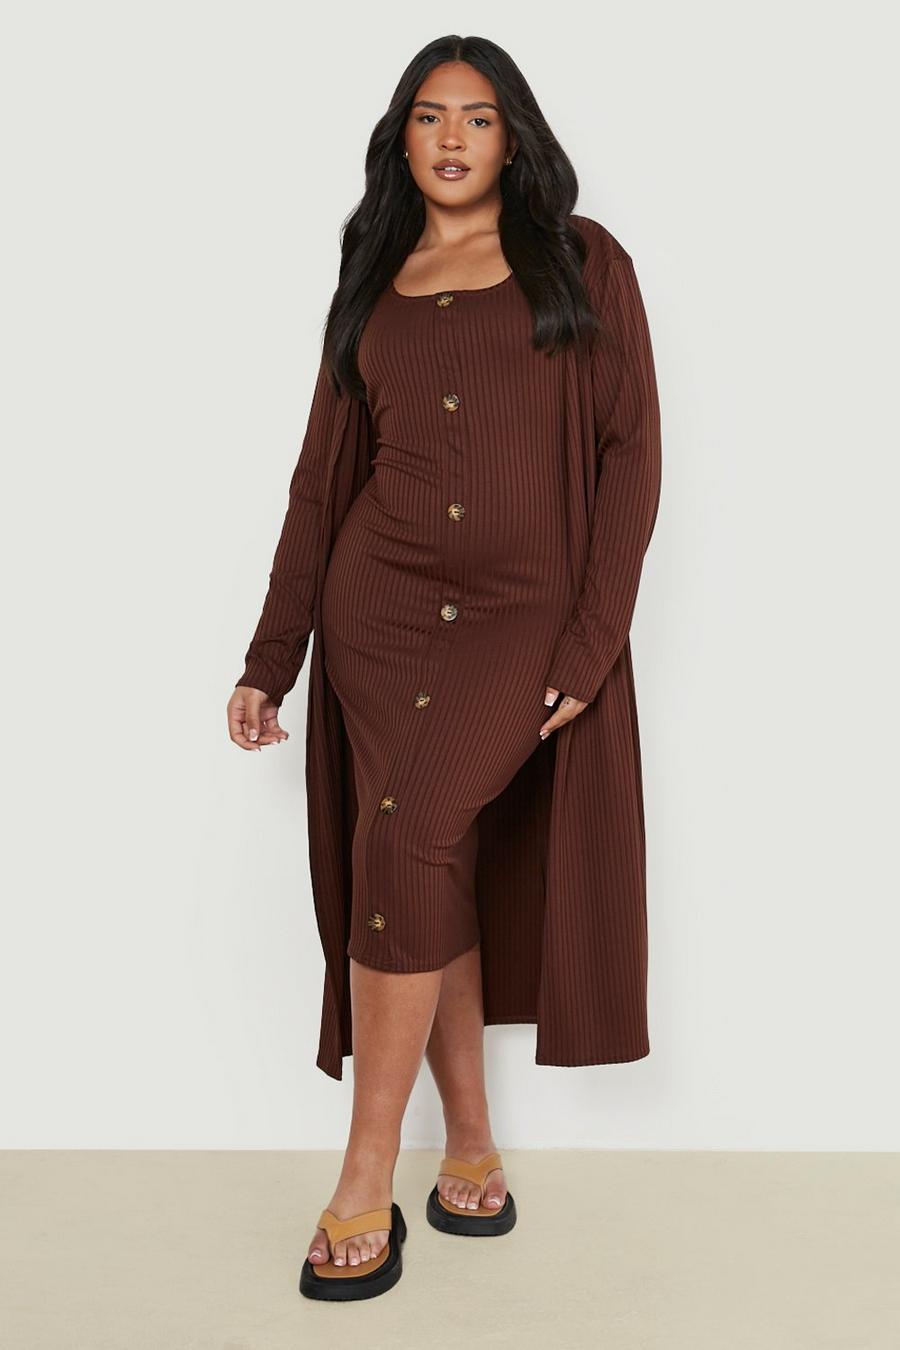 שוקולד marrón סט תואם שמלת מידי עם כפתורי קרן ומעיל דאסטר למידות גדולות